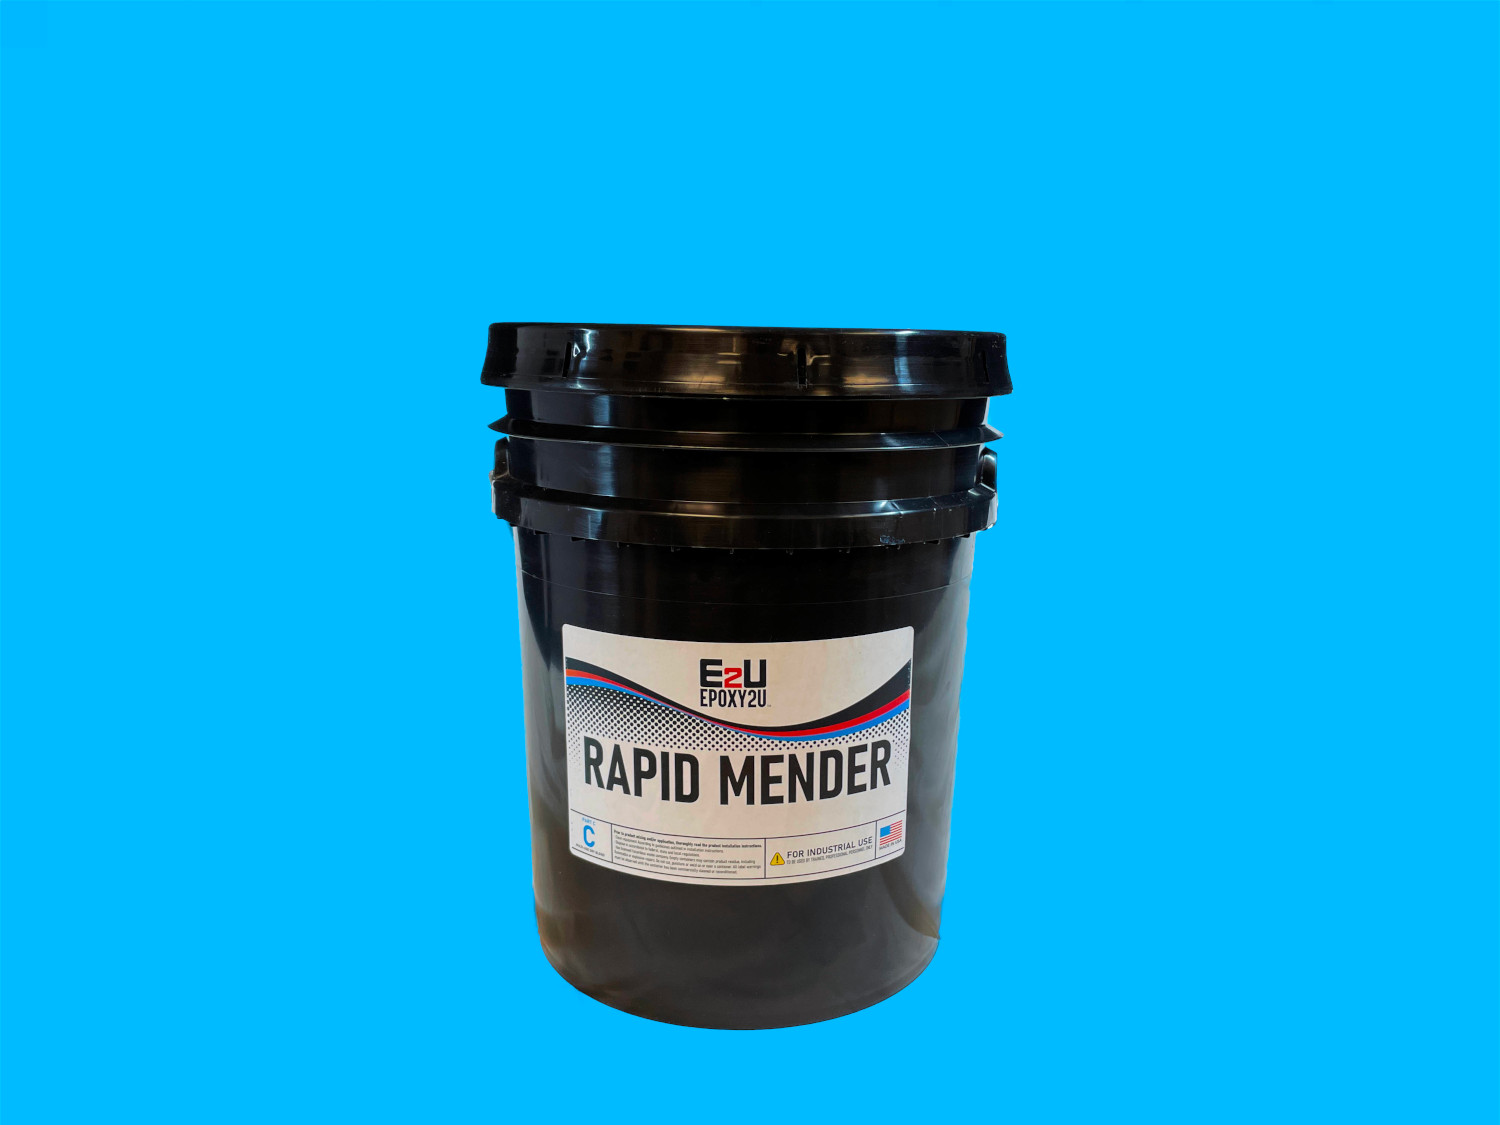 Rapid Mender C